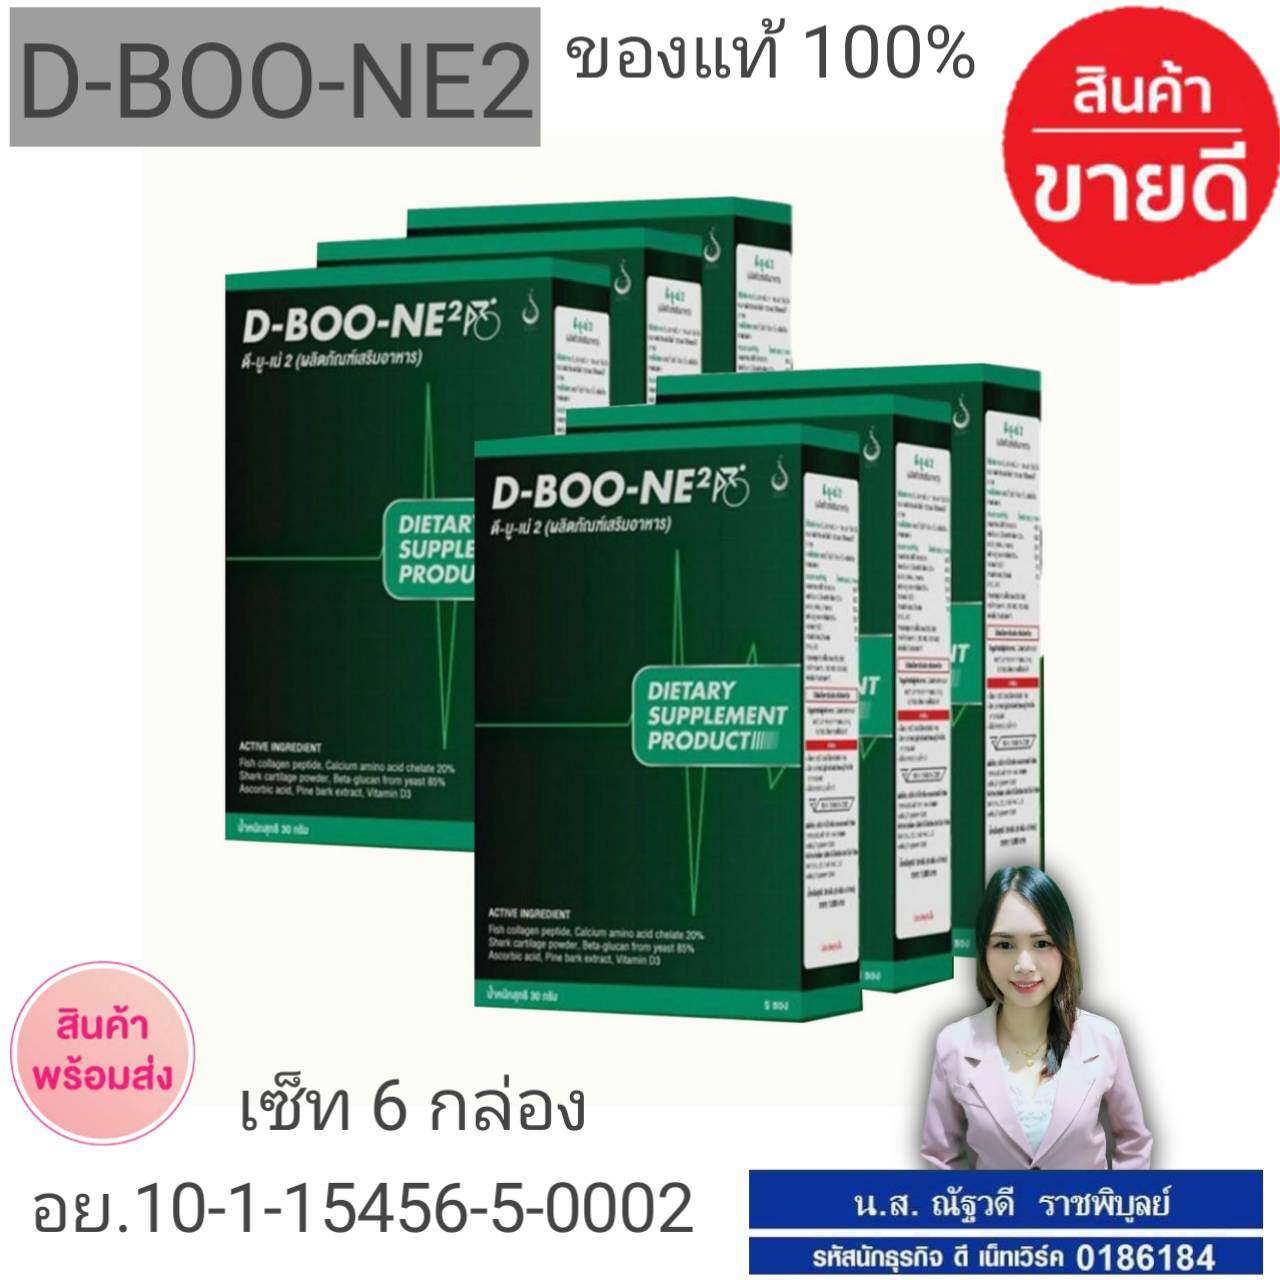 ผลิตภัณฑ์เสริมอาหาร ดี-บู-เน่ 2 (D-Boo-ne 2)  6 กล่อง ส่งฟรี